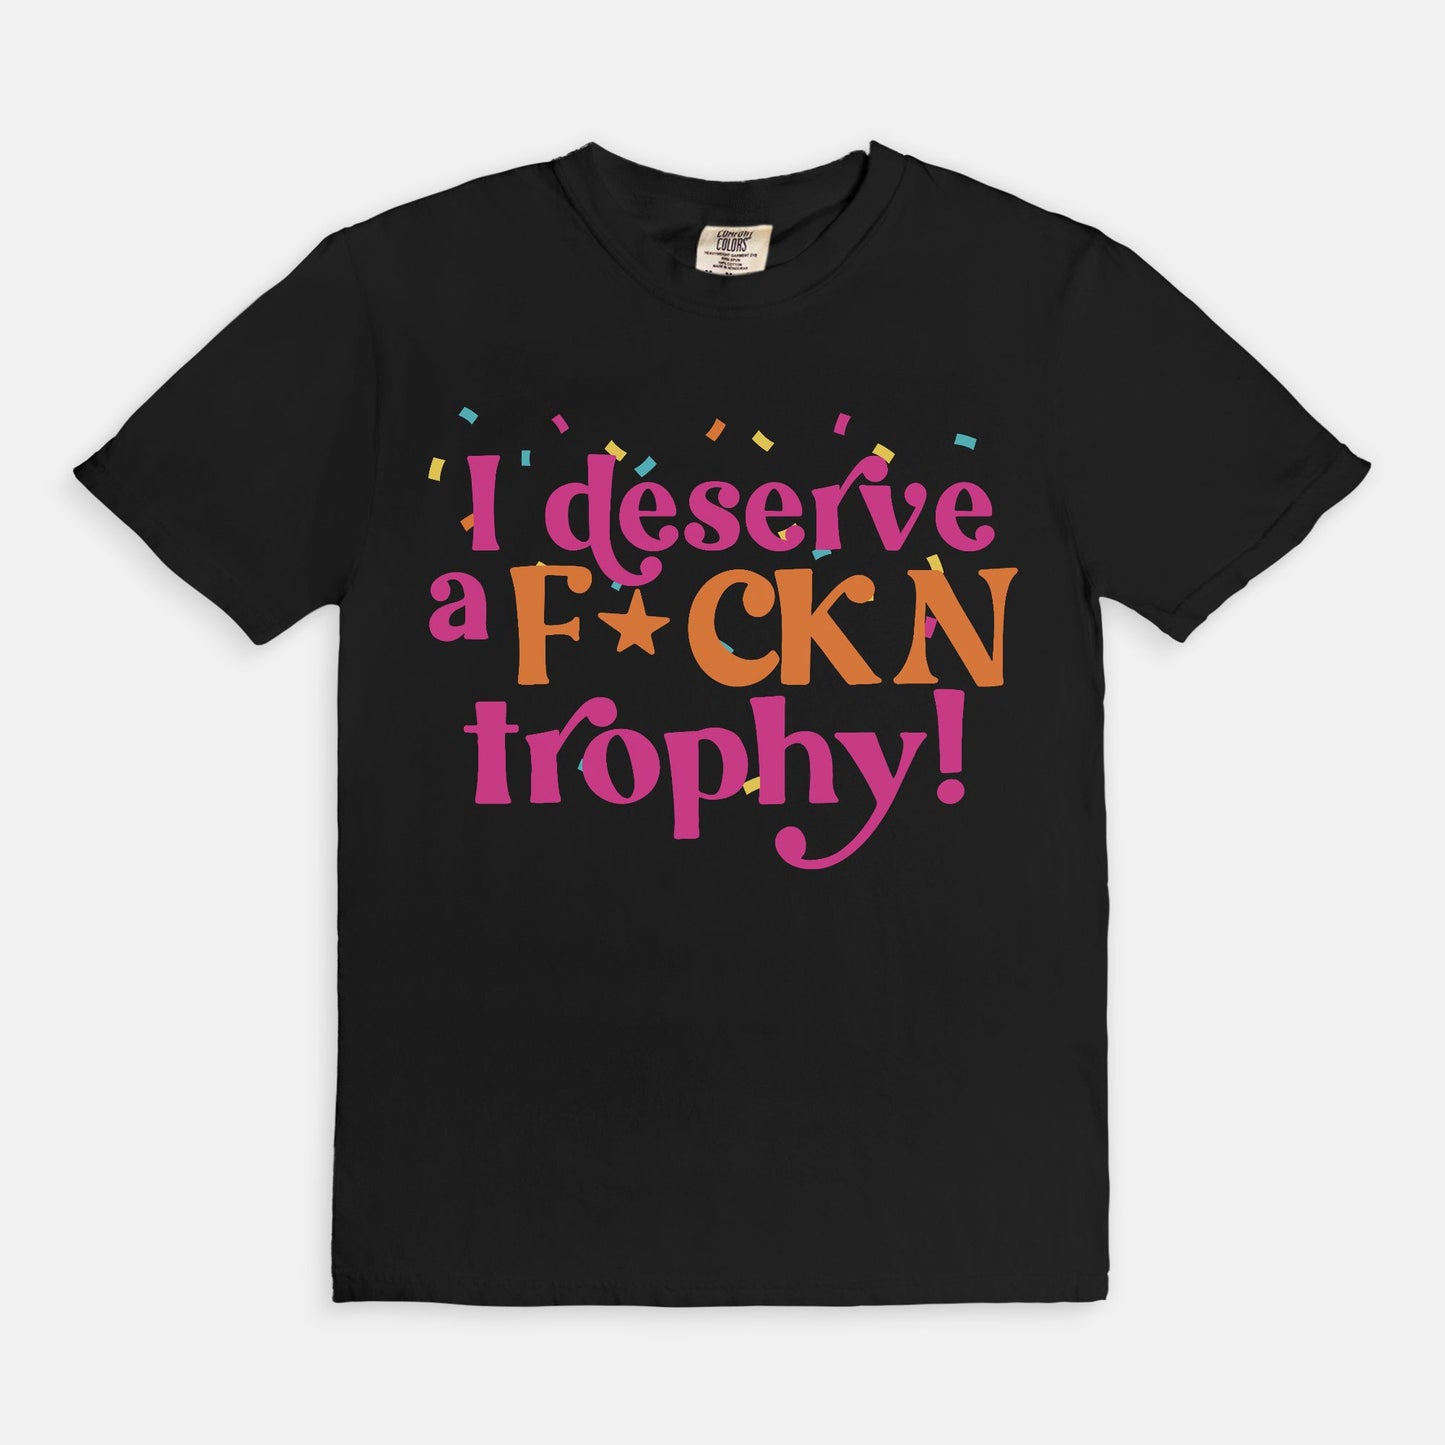 Fckn trophy shirt